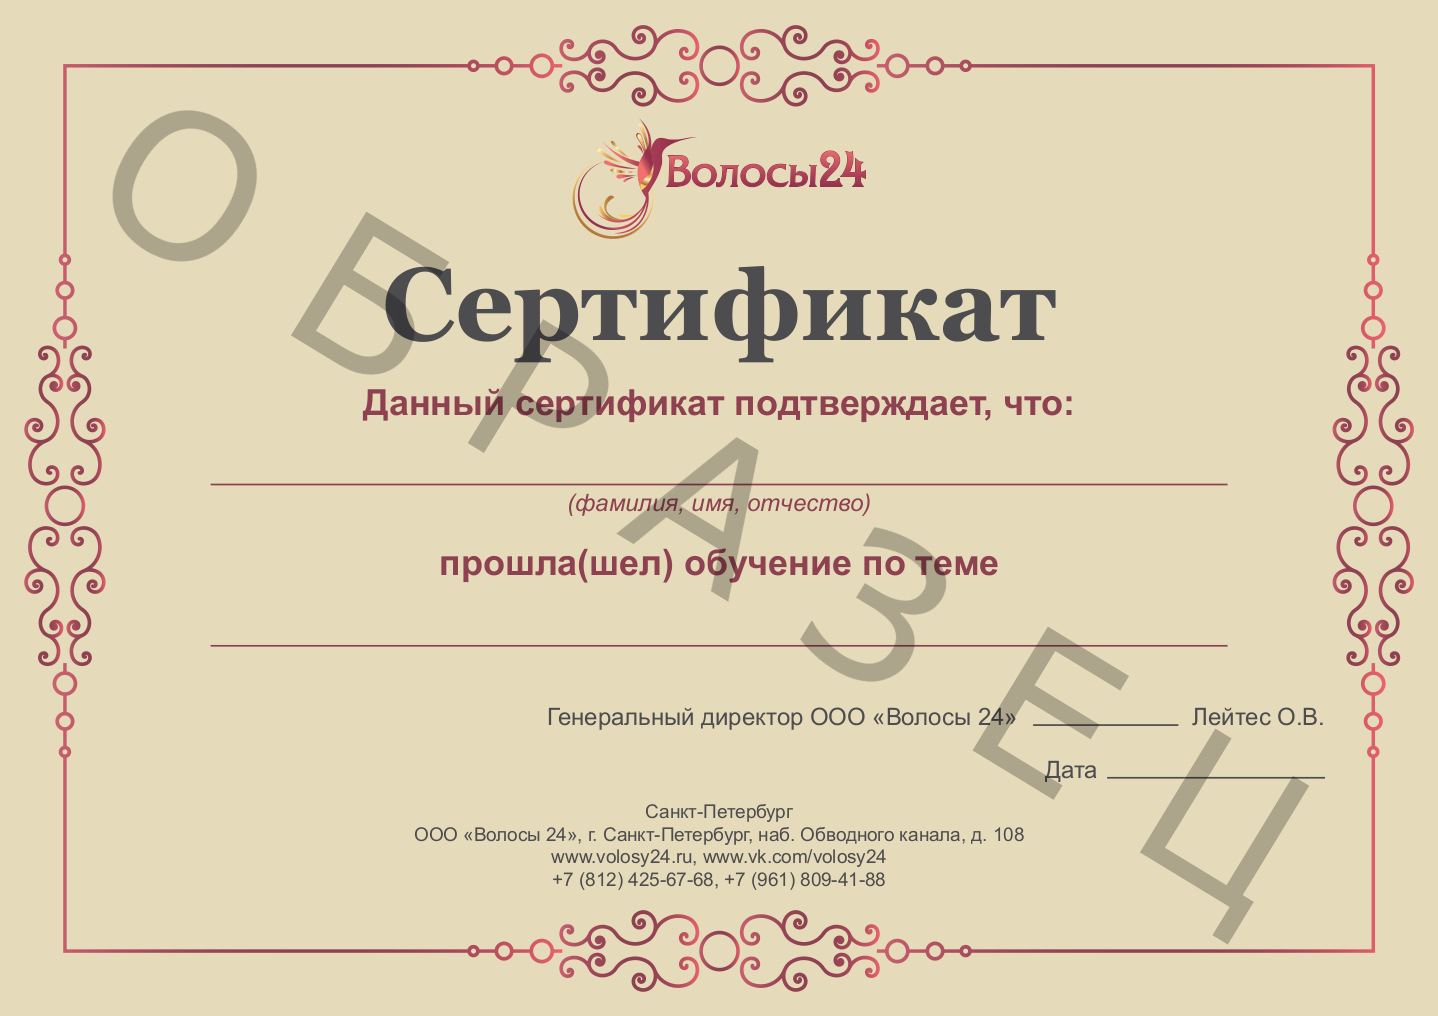 Сертификат семинара по постижерным работам